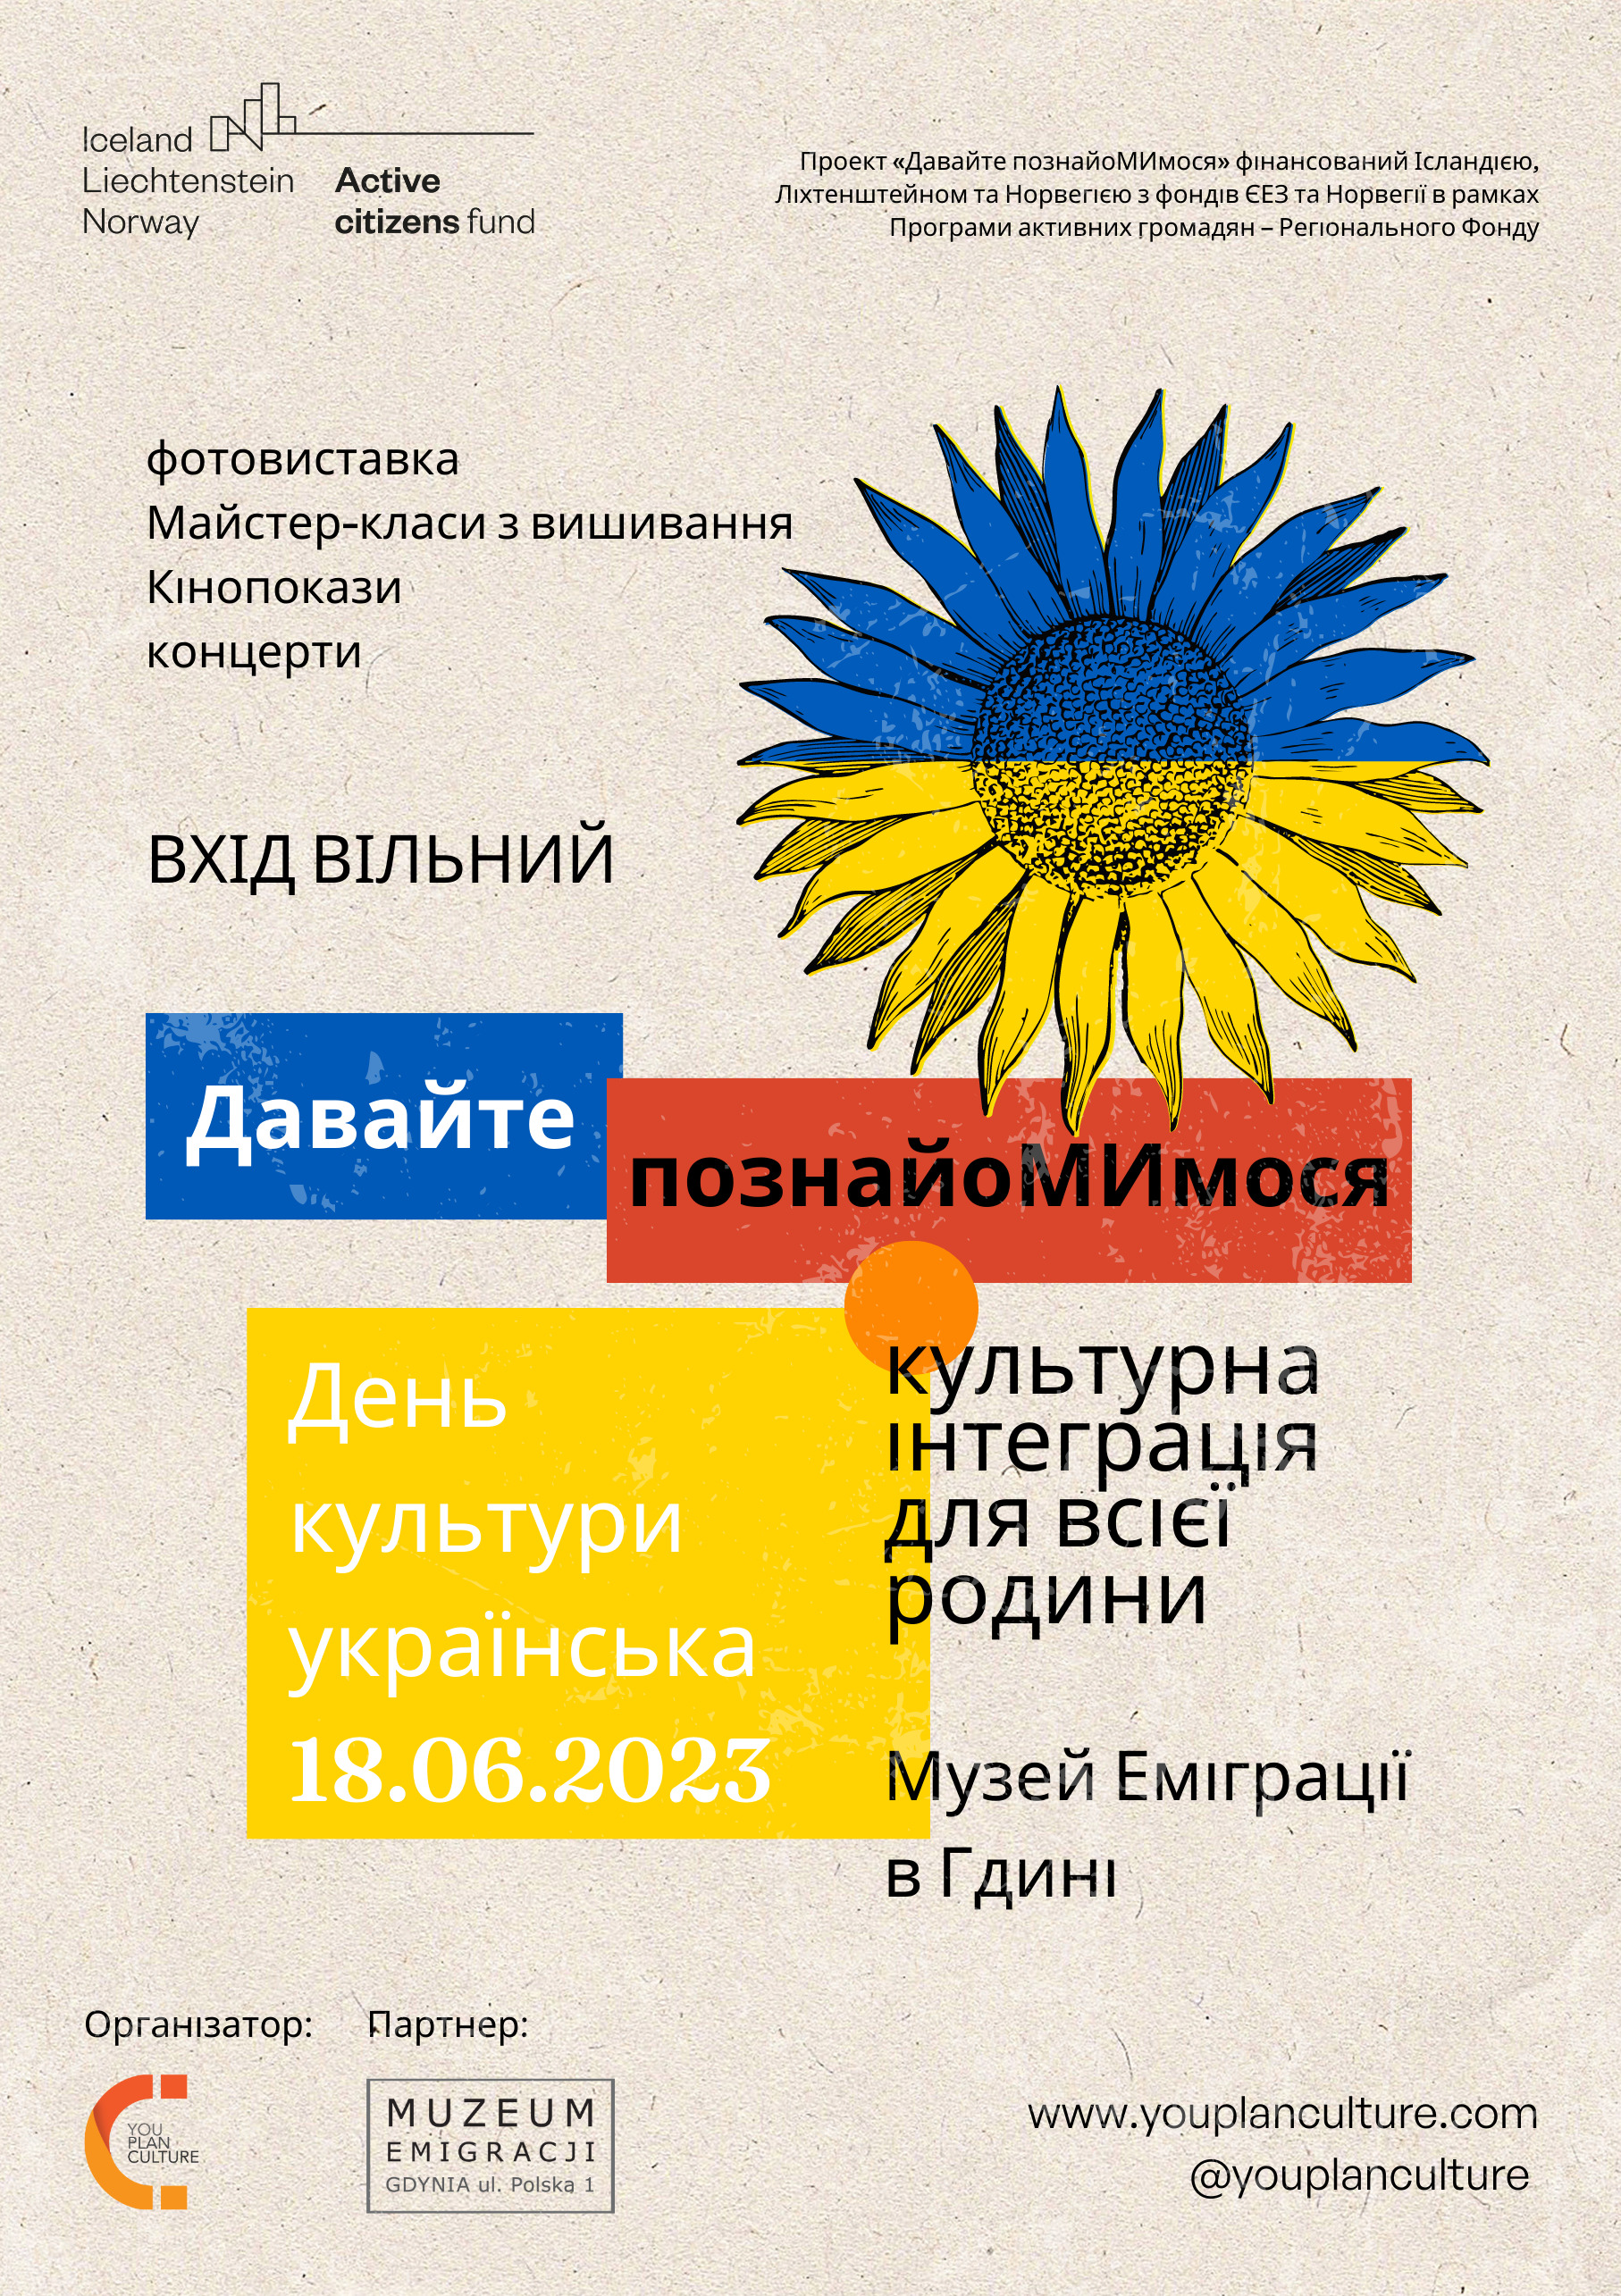 Plakat w języku ukraińskim z informacjami o wydarzeniu „PoznajMY się – Dzień Kultury Ukraińskiej”